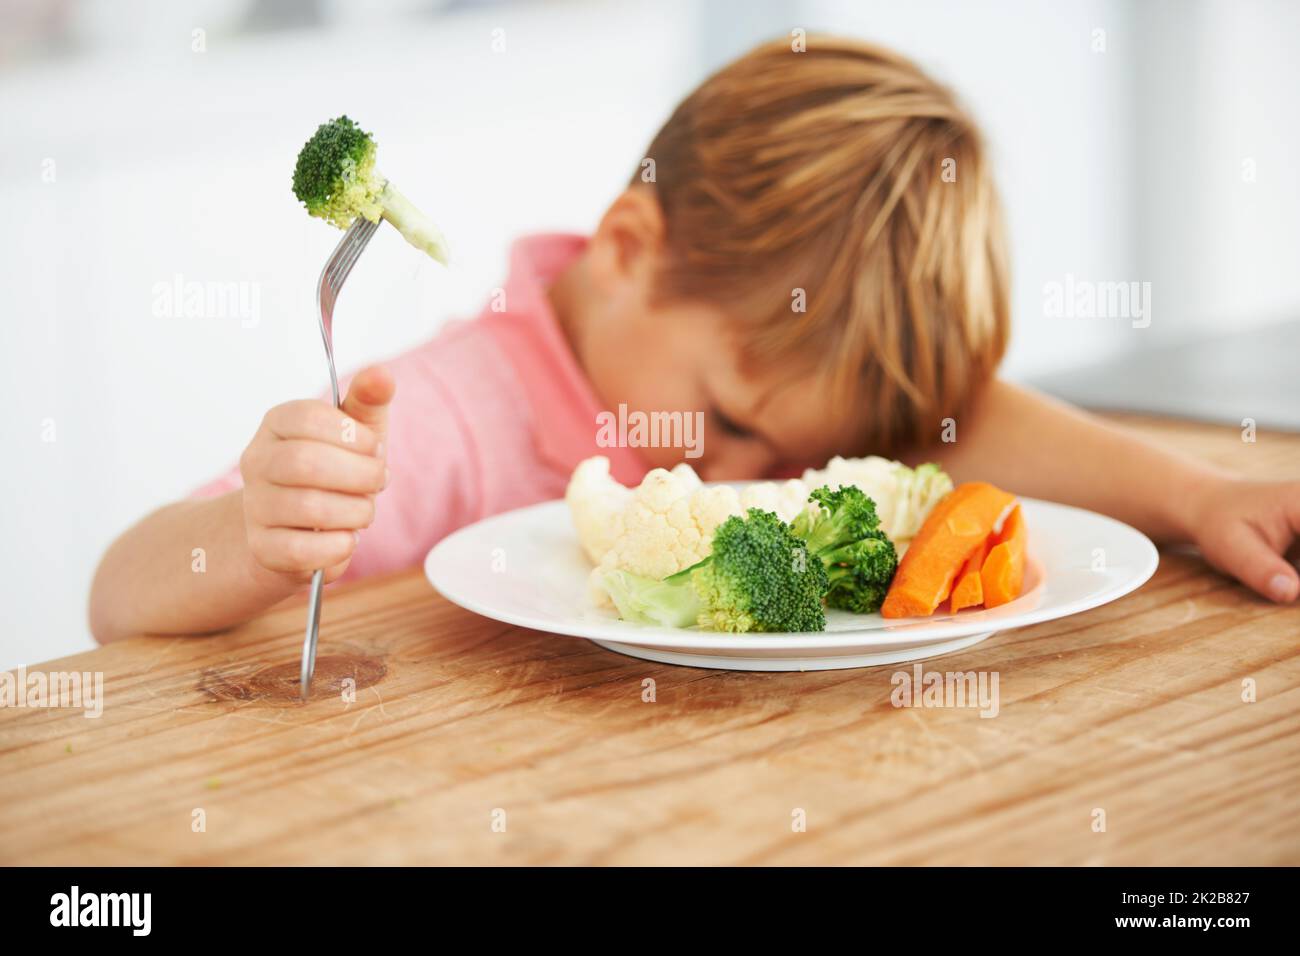 Tutto tranne i broccoli.... Un ragazzino molto infelice di dover mangiare verdure. Foto Stock